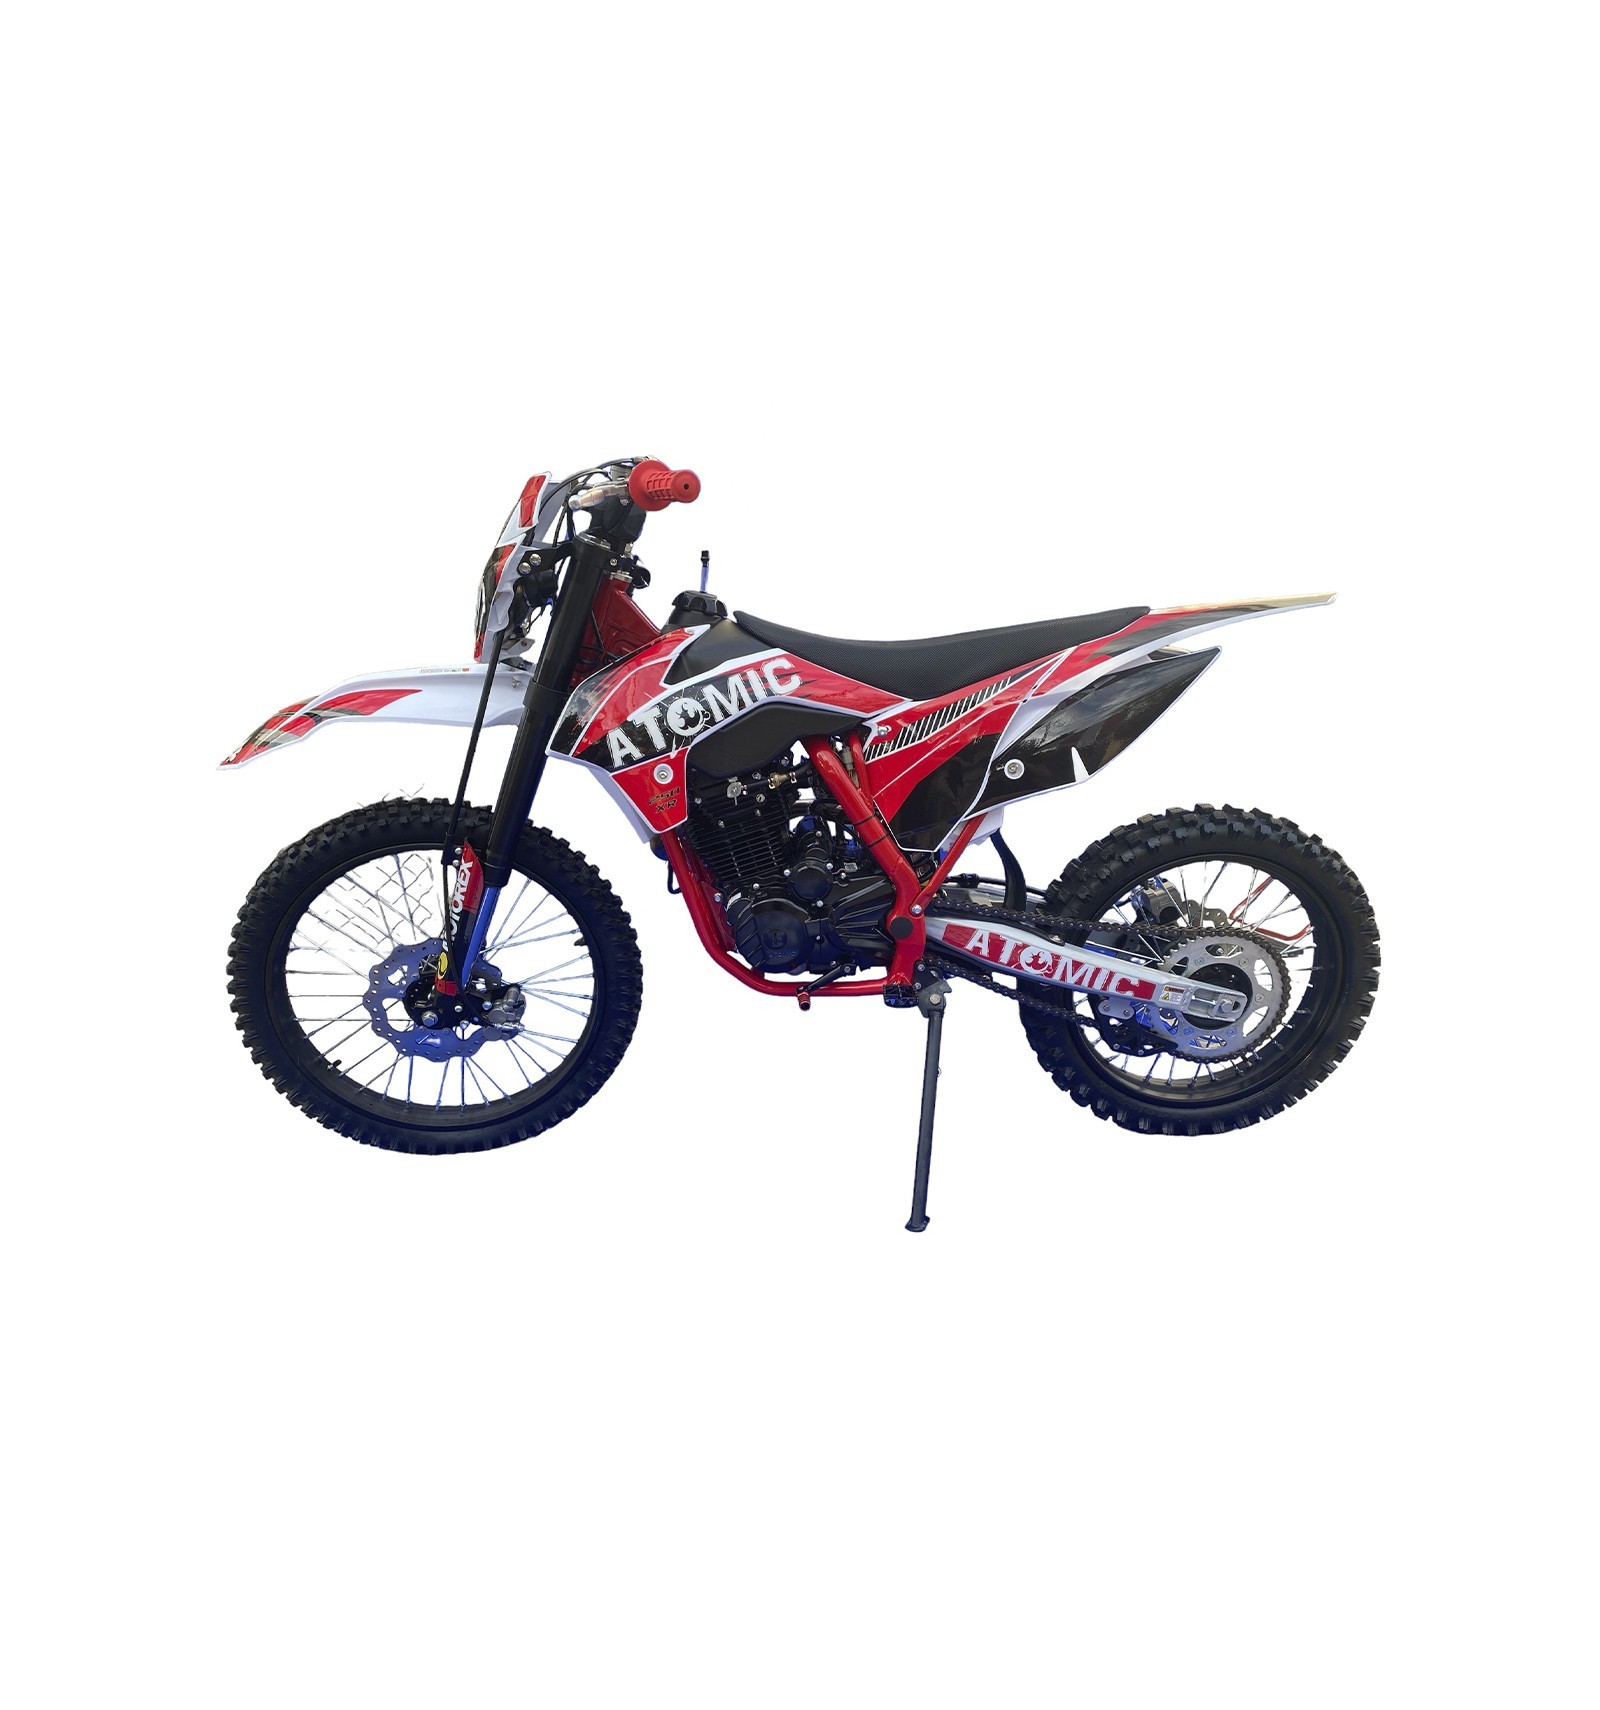 Yamaha cria primeira moto elétrica 250 para motocross Motos Elétricas 